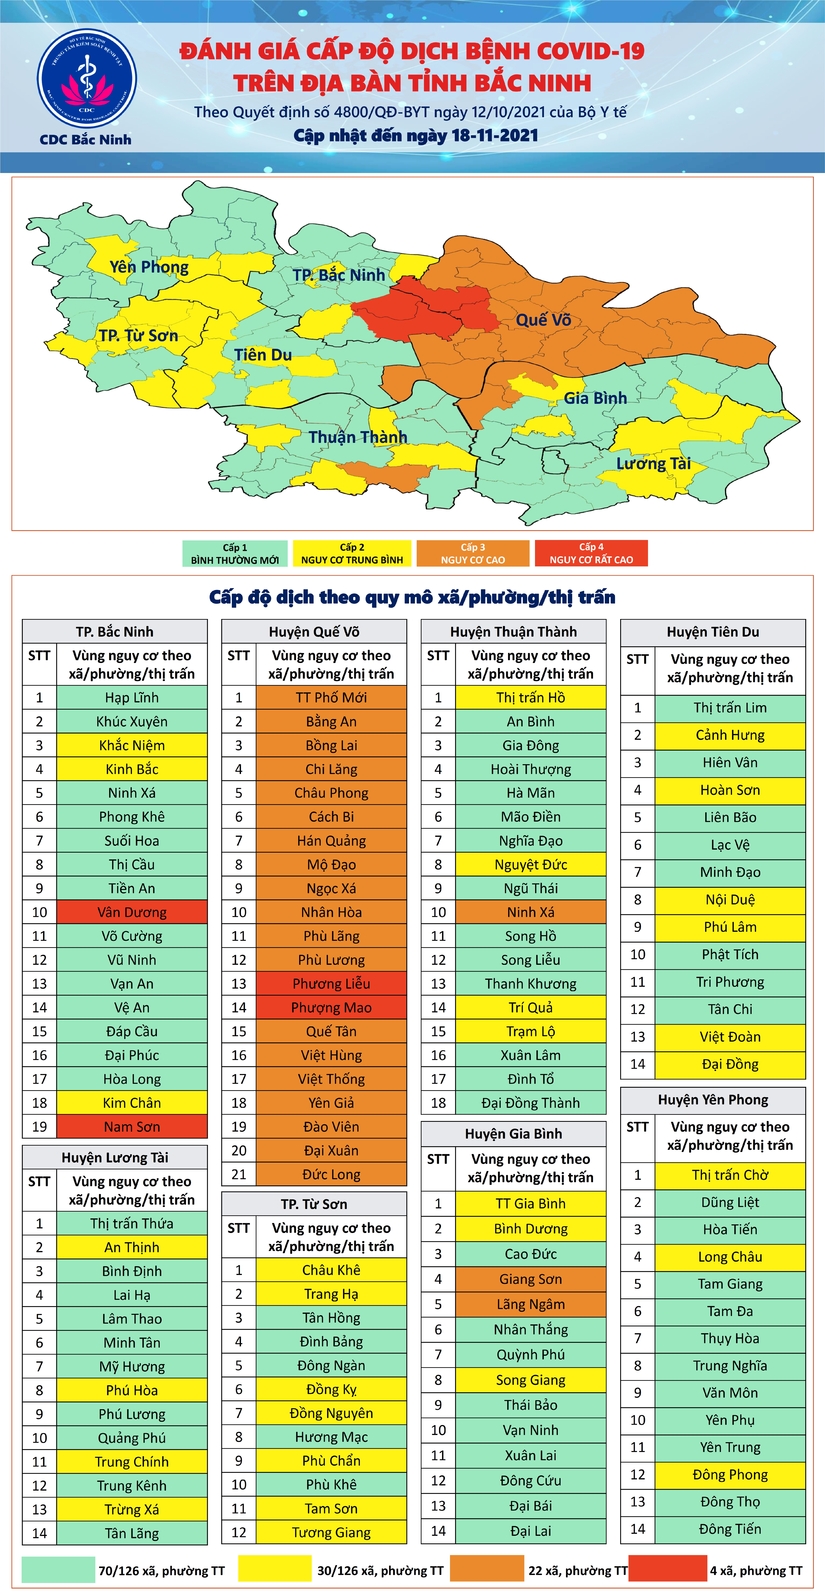 Bắc Ninh có 22 xã, phường, thị trấn  thuộc nhóm nguy cơ cao